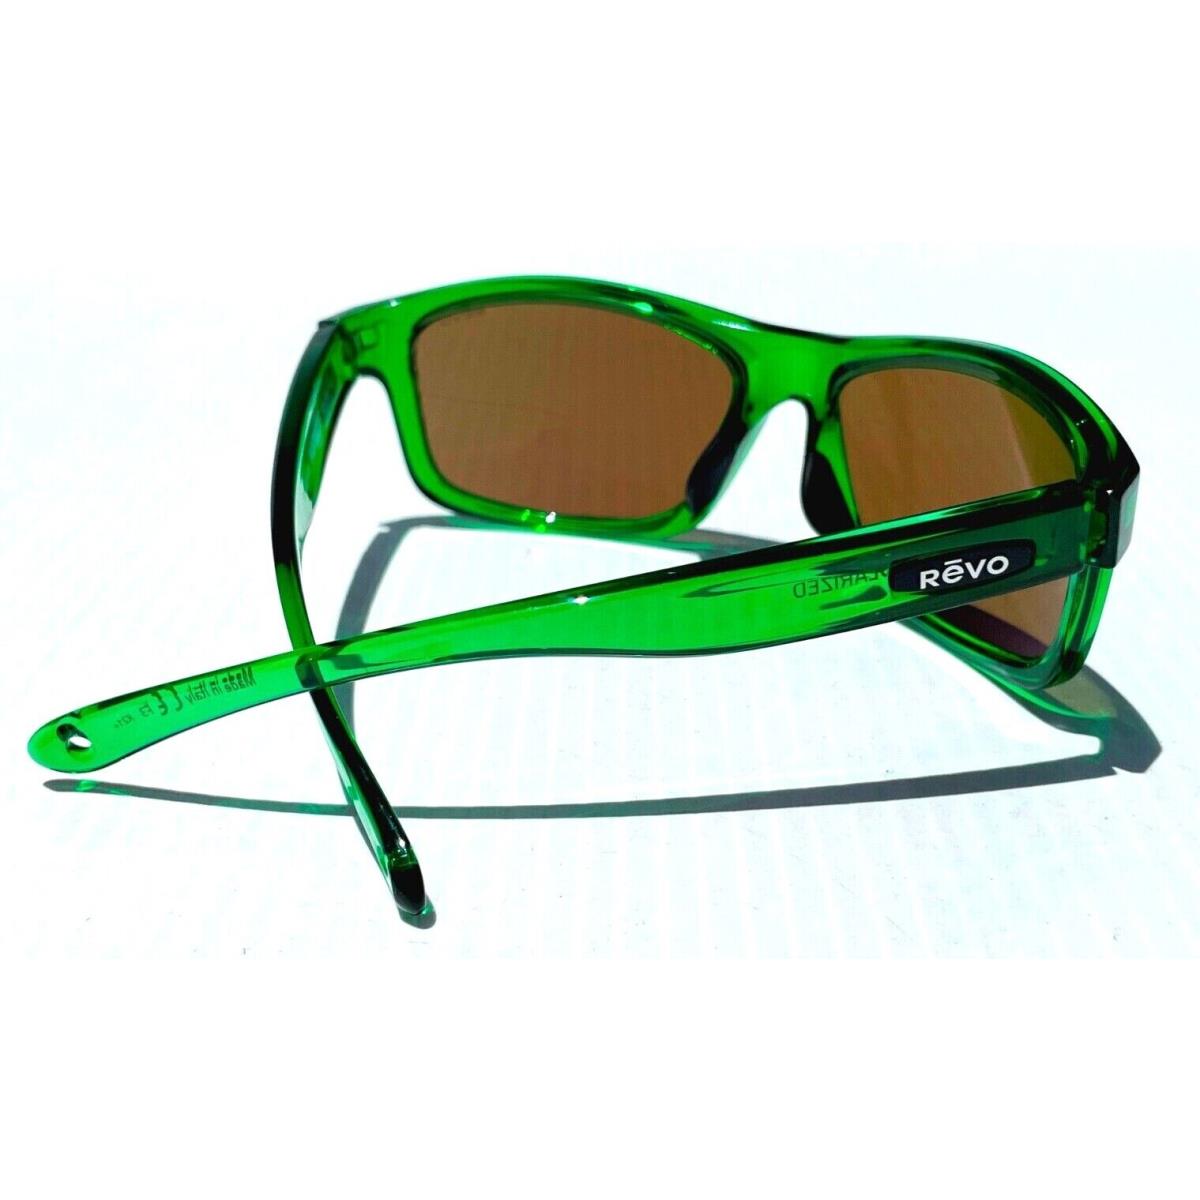 Revo sunglasses Harness - Green Frame, Green Lens 5